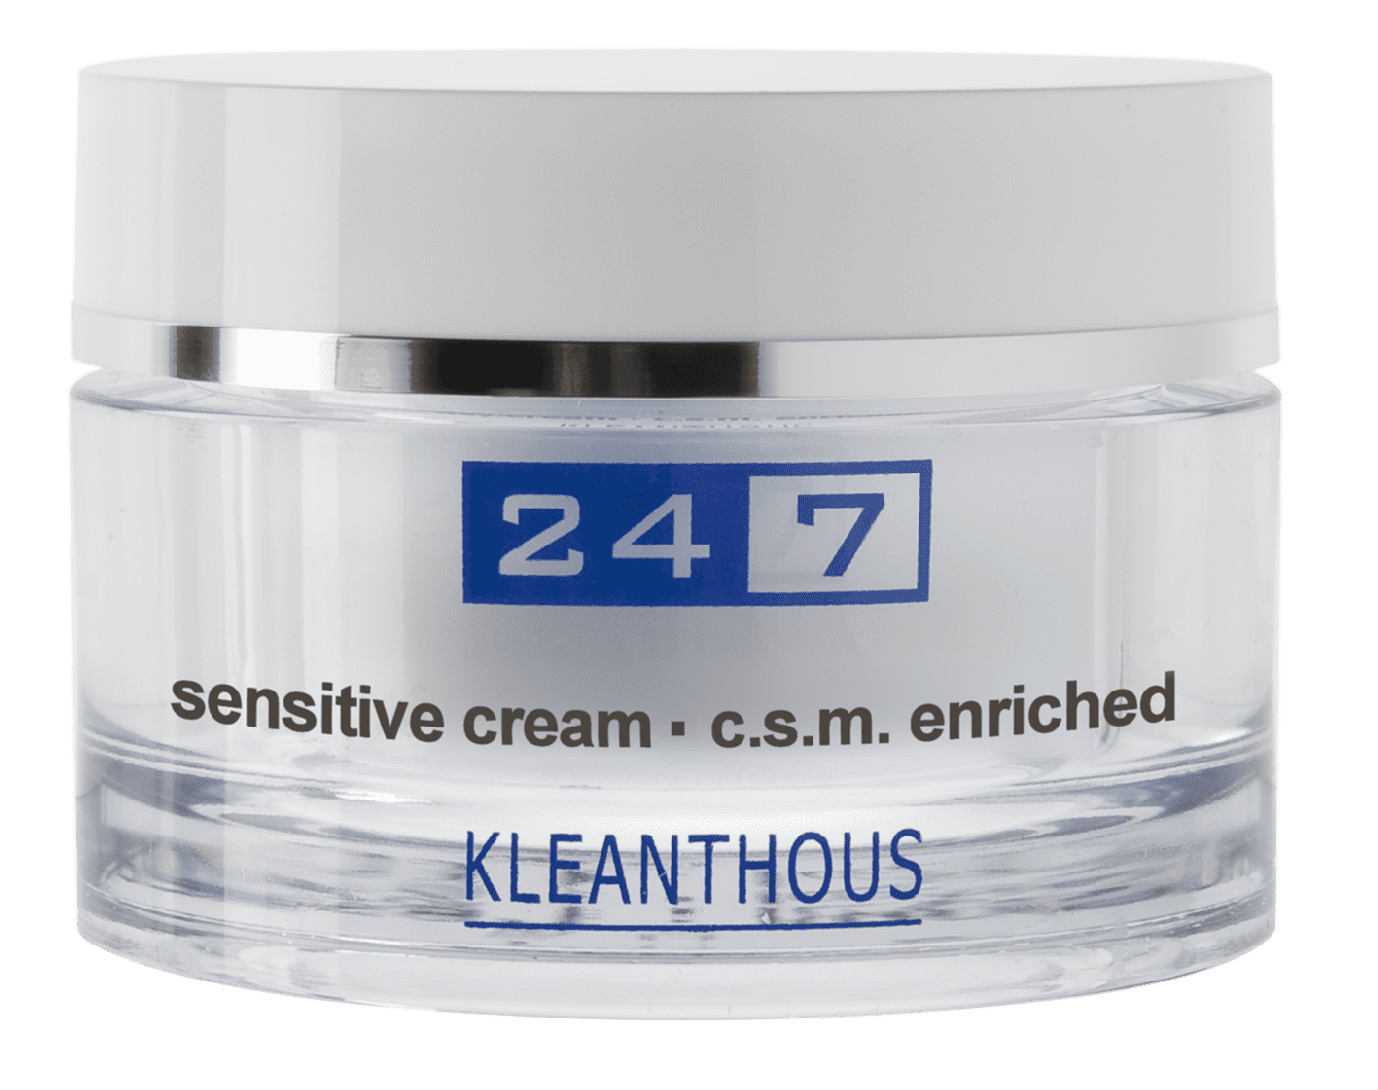 Kleanthous 24/7 sensitive cream - c.s.m. enriched - 50ml